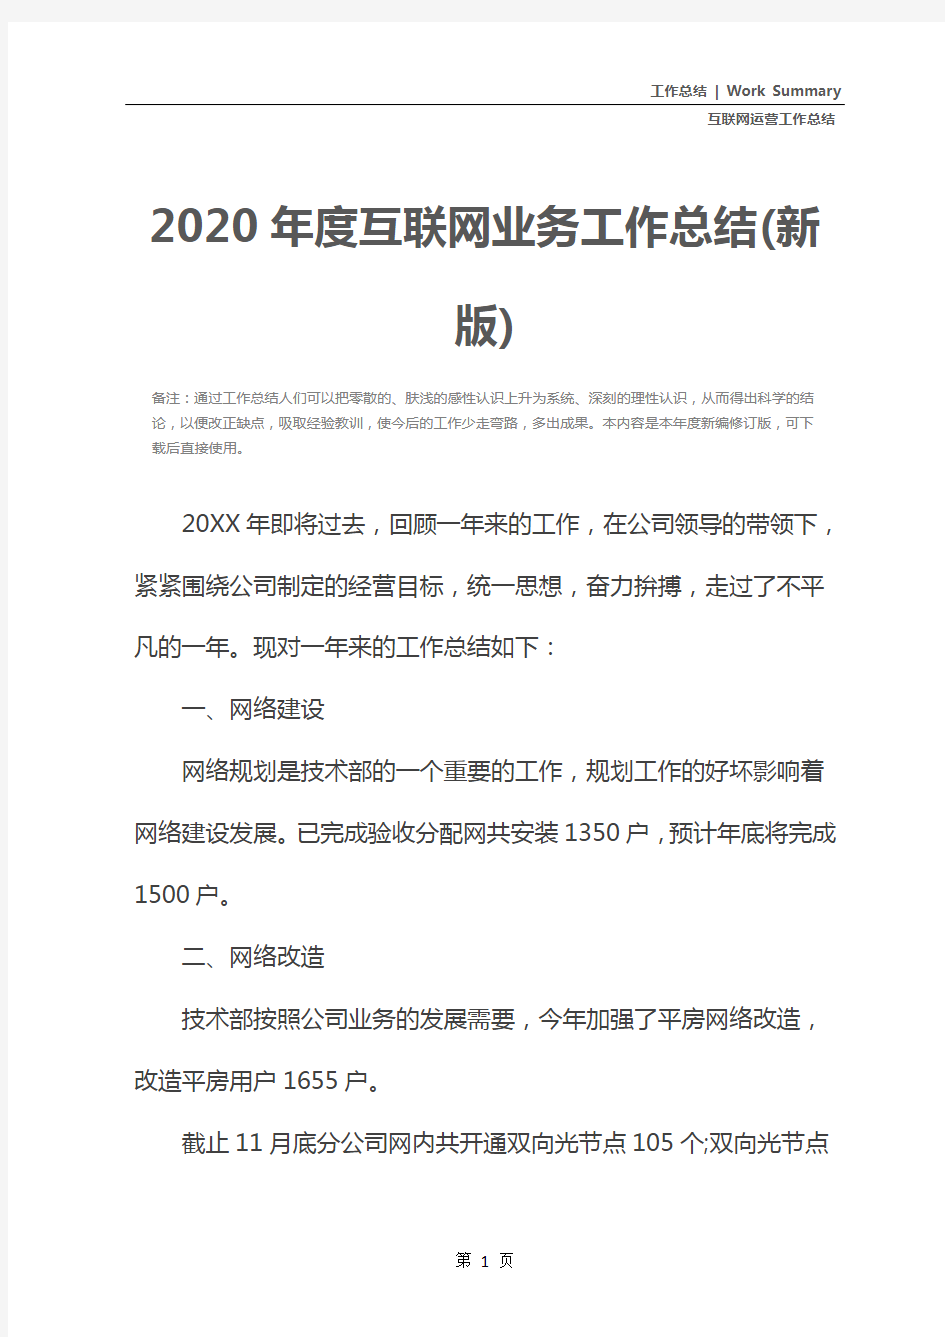 2020年度互联网业务工作总结(新版)